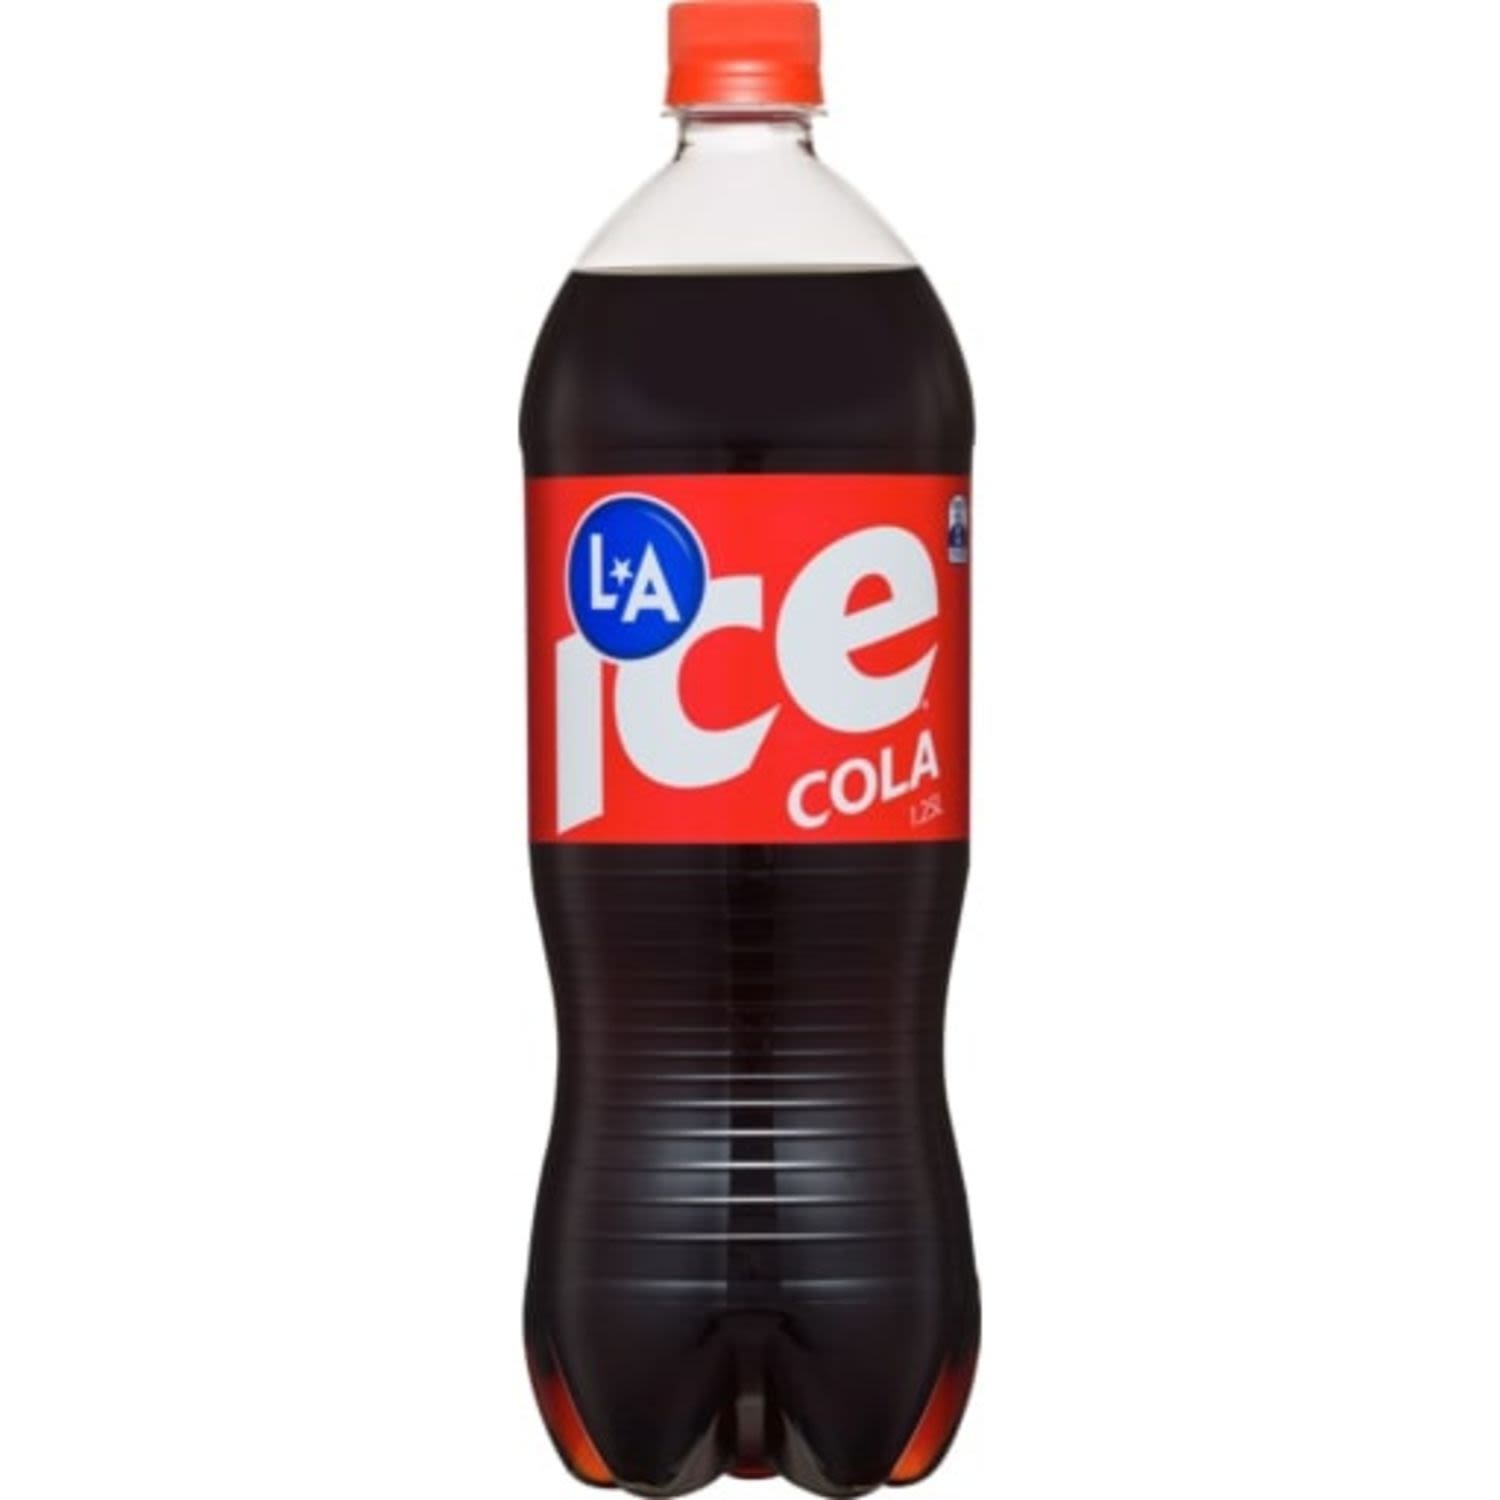 La Ice Cola Bottle, 1.25 Litre